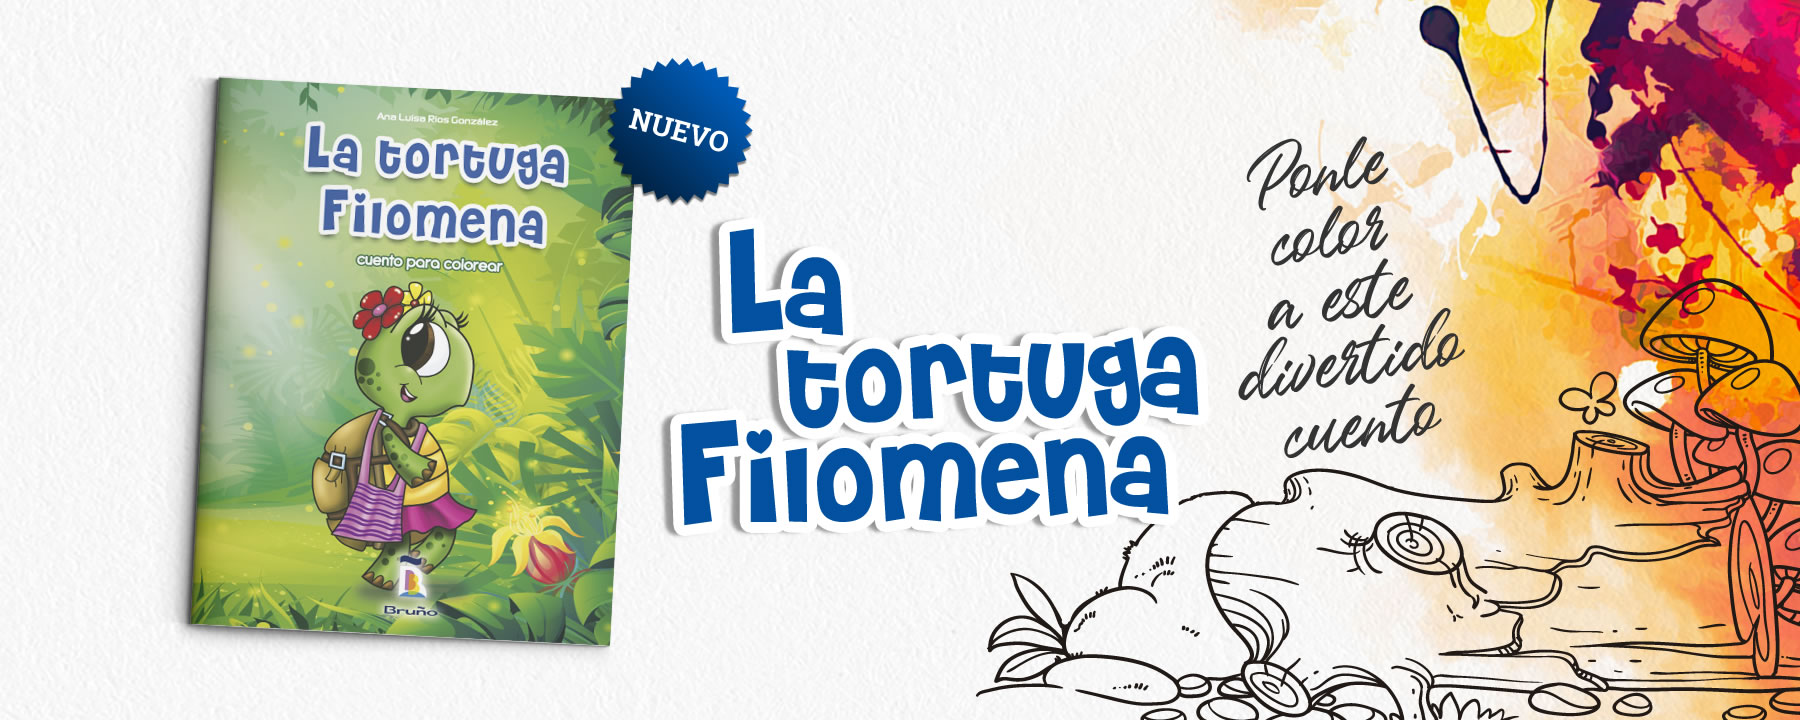 Ponle color a esta divertida aventura mientras acompañas a Filomena en su travesía por la selva peruana.